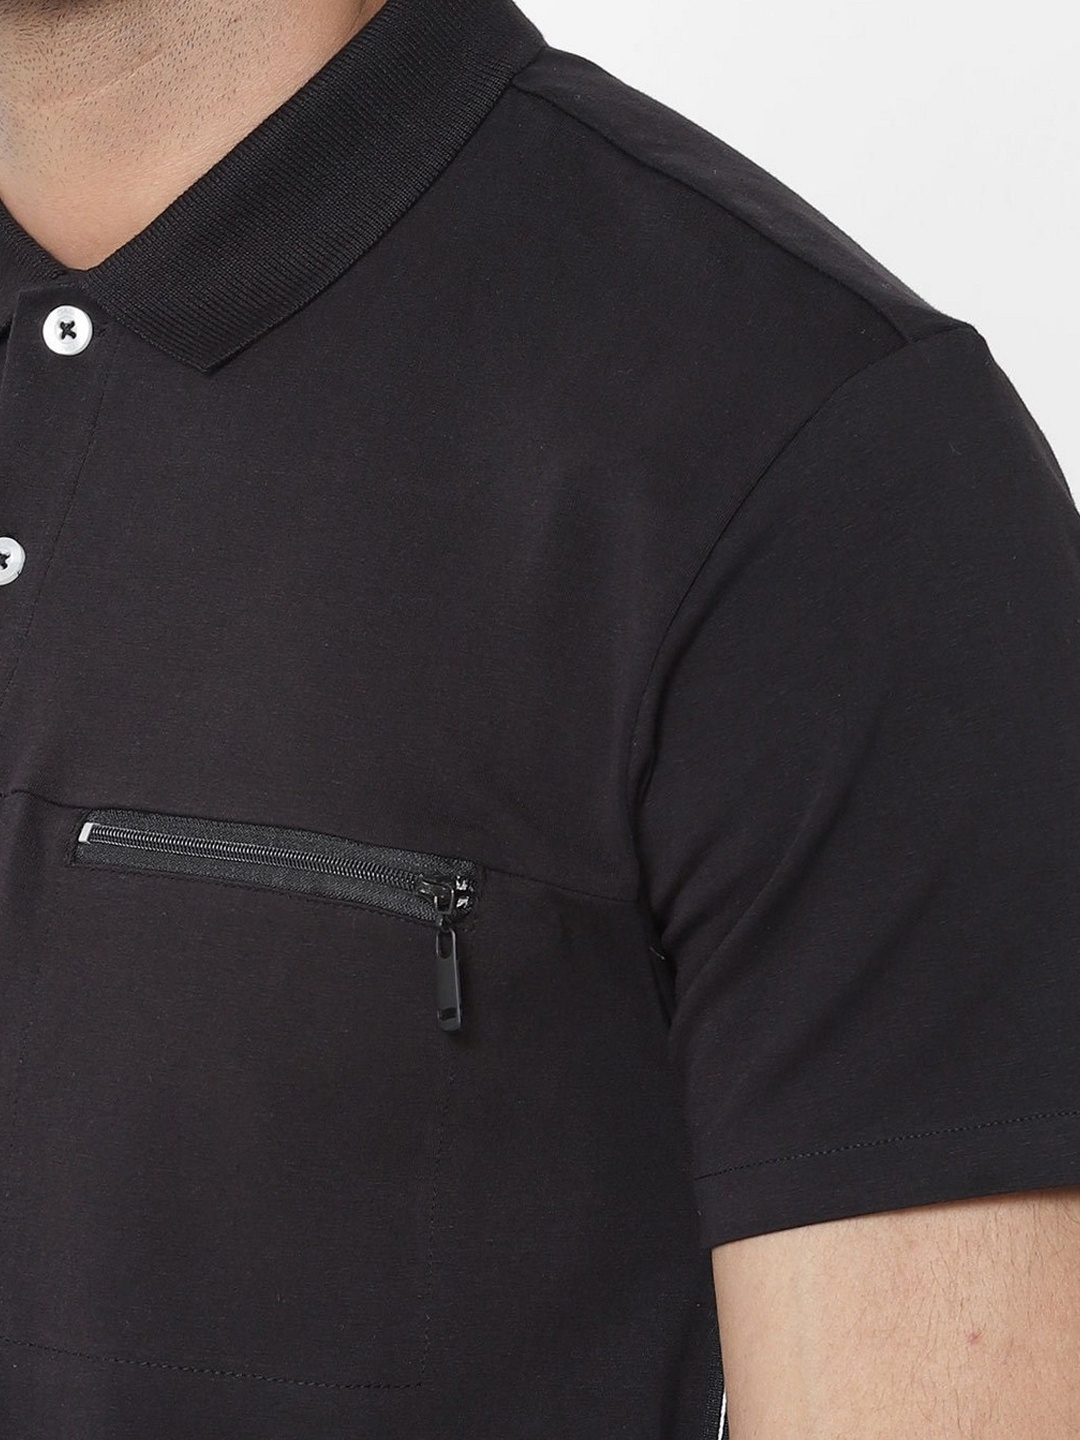 Keff Solid Black Polo T-Shirt